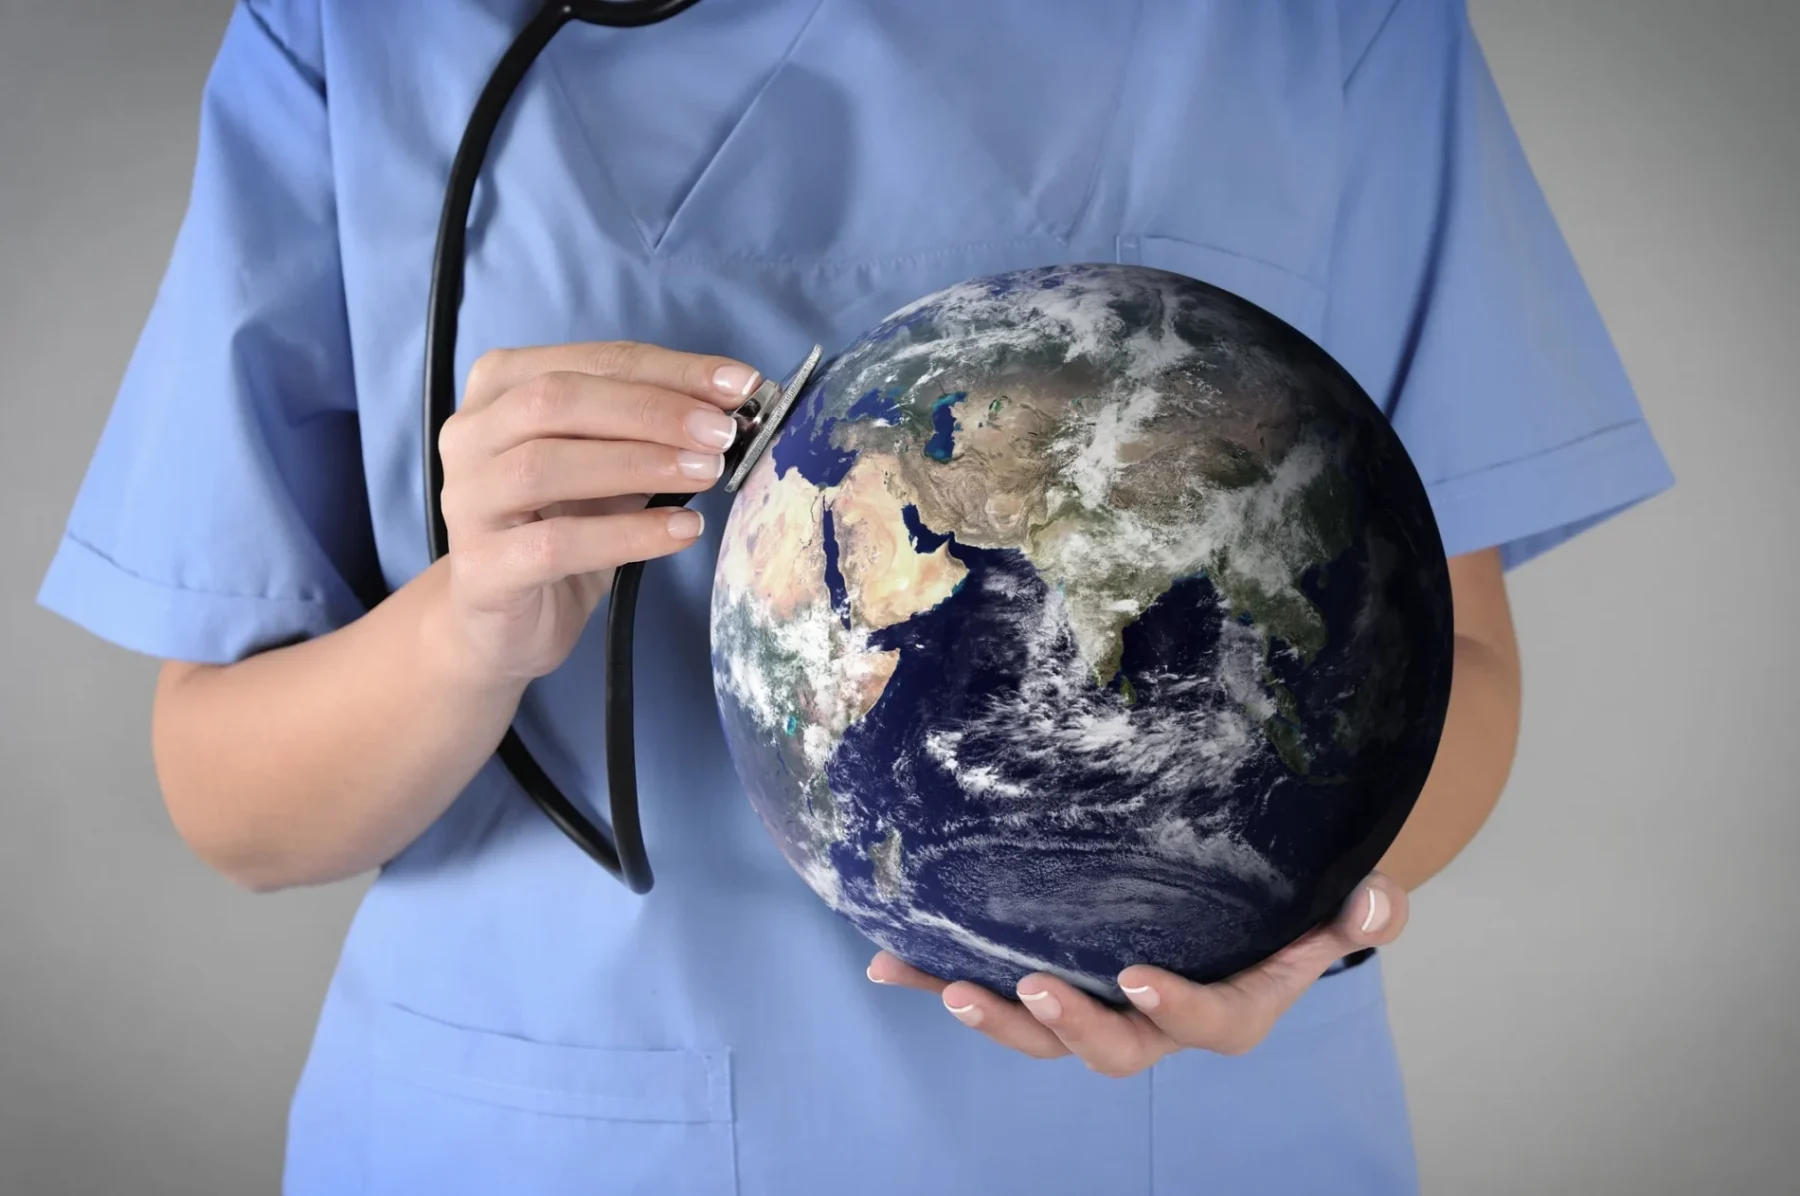 Δημόσια υγεία: Η υγειονομική περίθαλψη έχει αντίκτυπο στην κλιματική αλλαγή